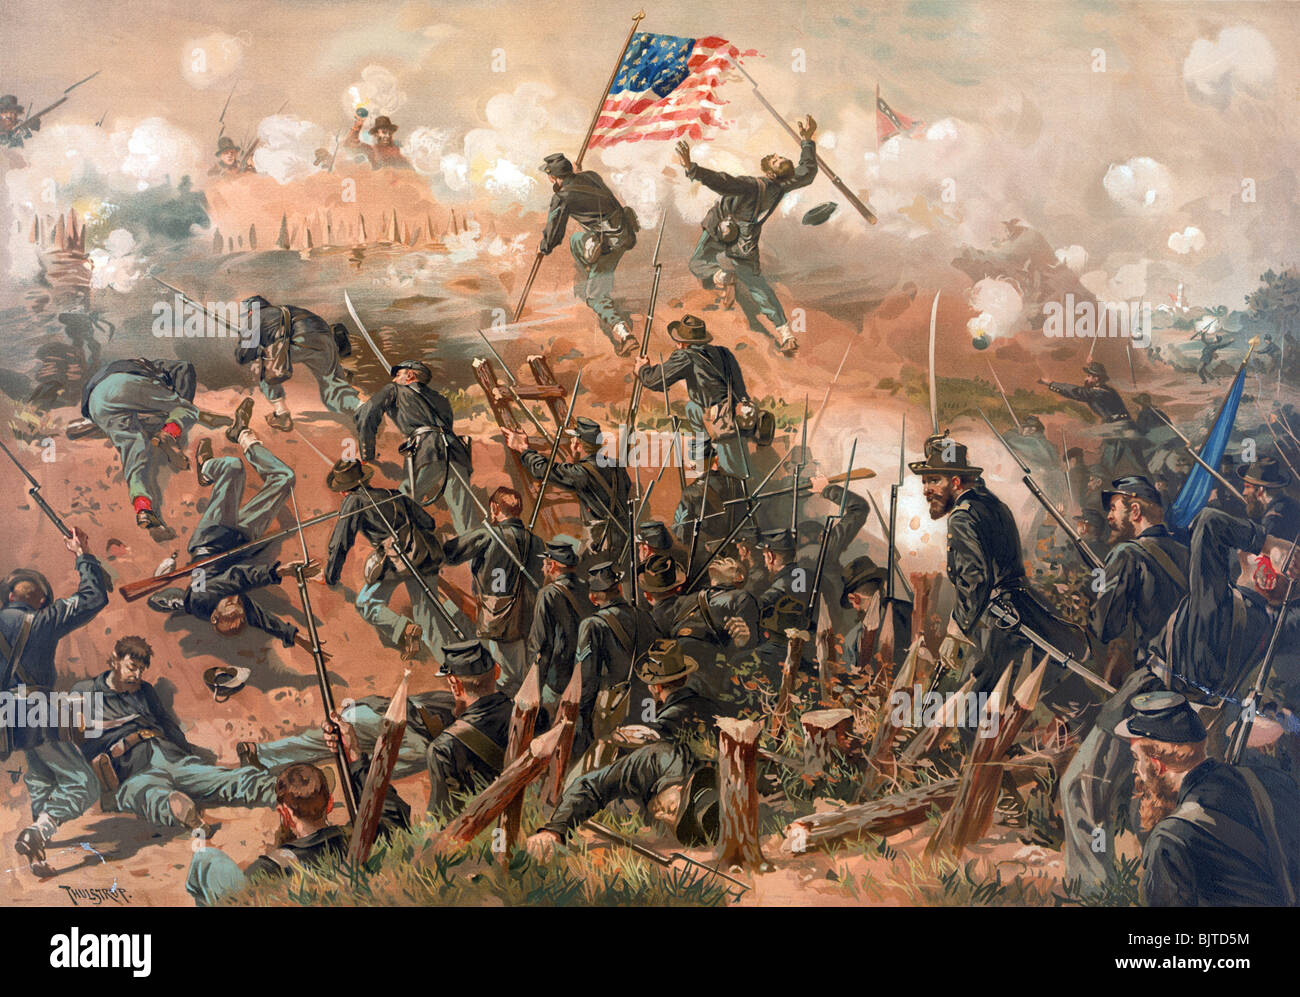 Stampa a colori c1888 raffigurante l assedio di Vicksburg (25 maggio - 4 luglio 1863) durante gli Stati Uniti nella guerra civile. Foto Stock